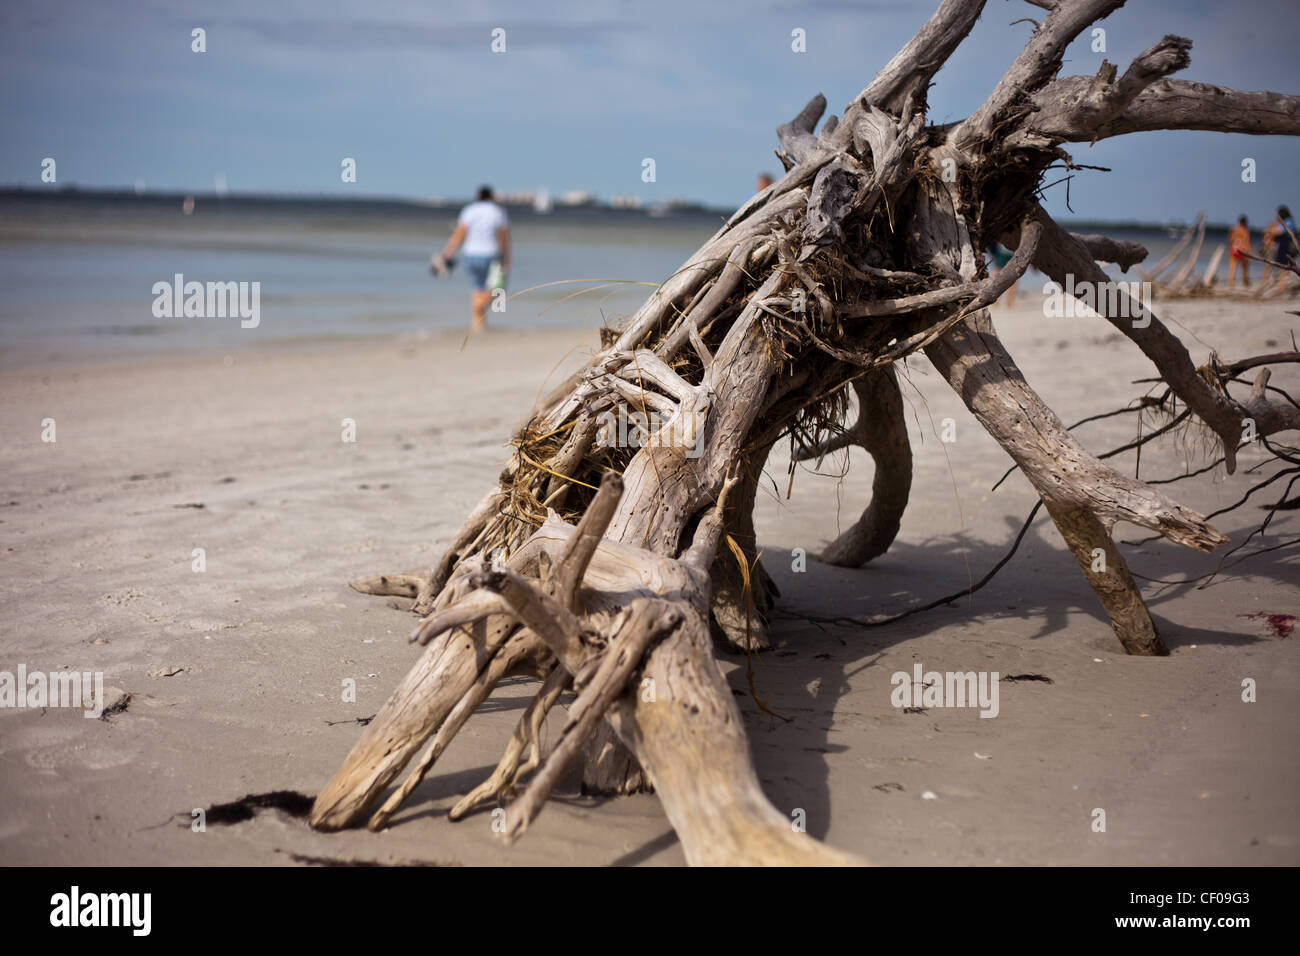 Viejo árbol lavados en la playa, enterrados en la playa,deriva de árbol de madera, árbol muerto enterrado en Florida beach,beach comber, Foto de stock